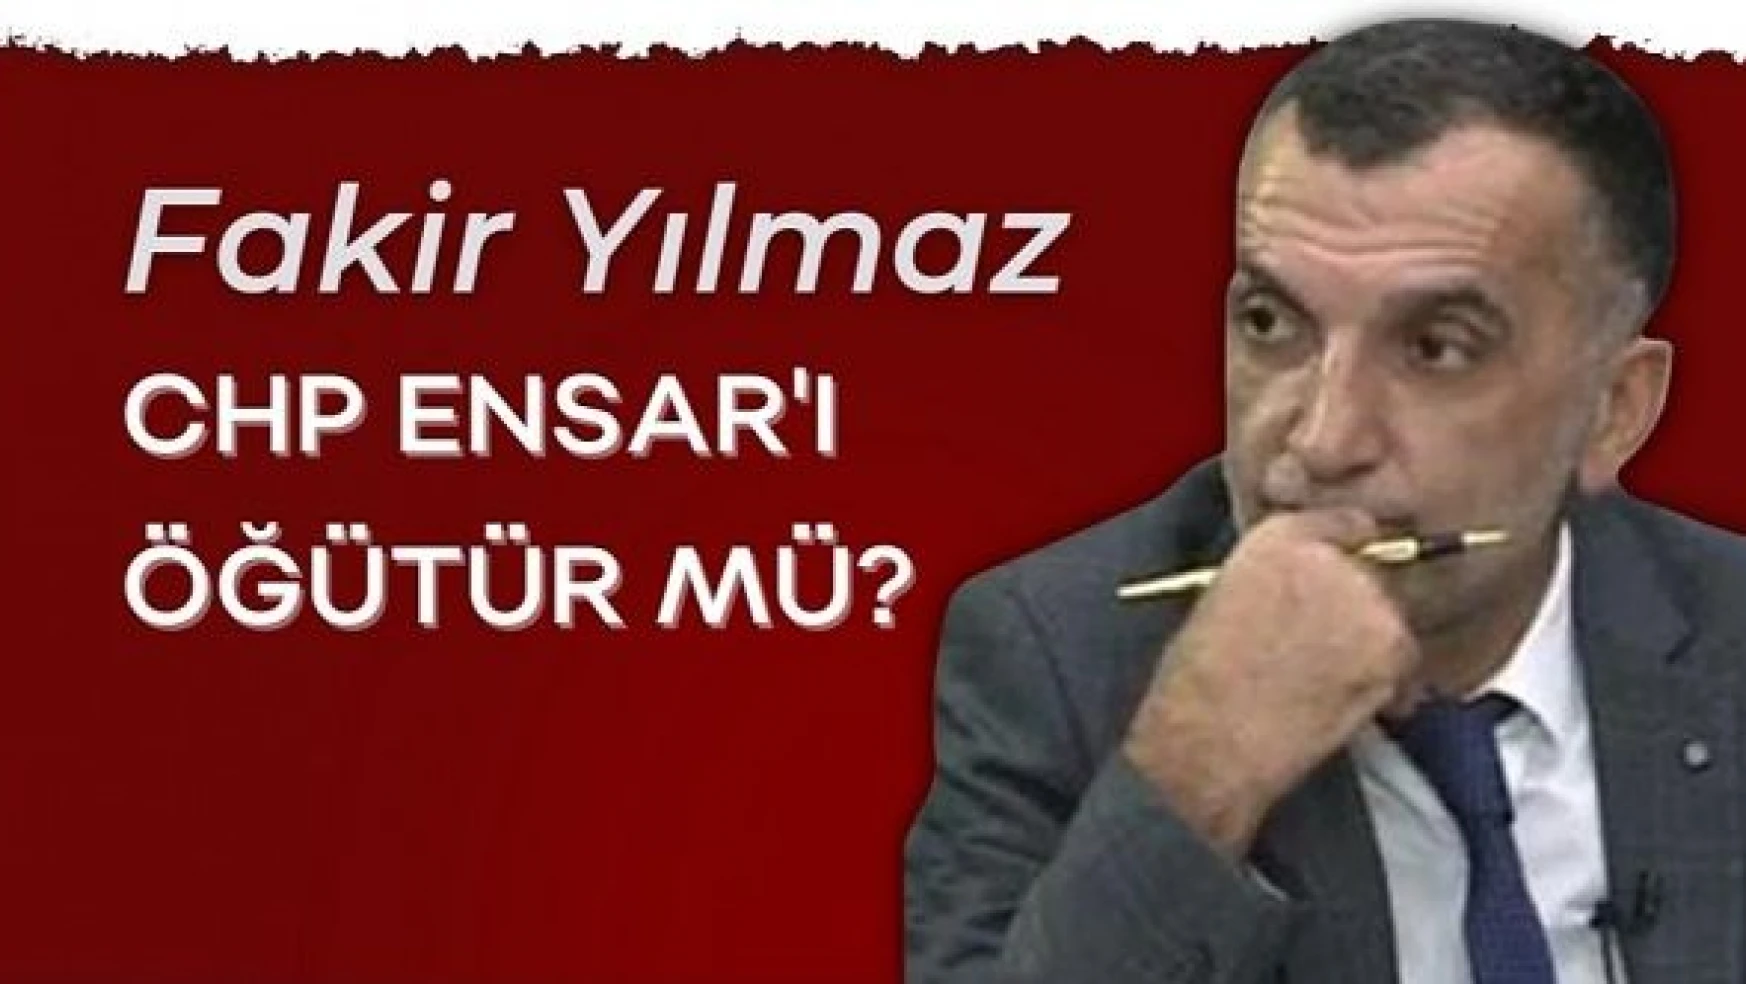 Gazeteci Fakir Yılmaz yazdı... "CHP Ensar'ı öğütür mü?"